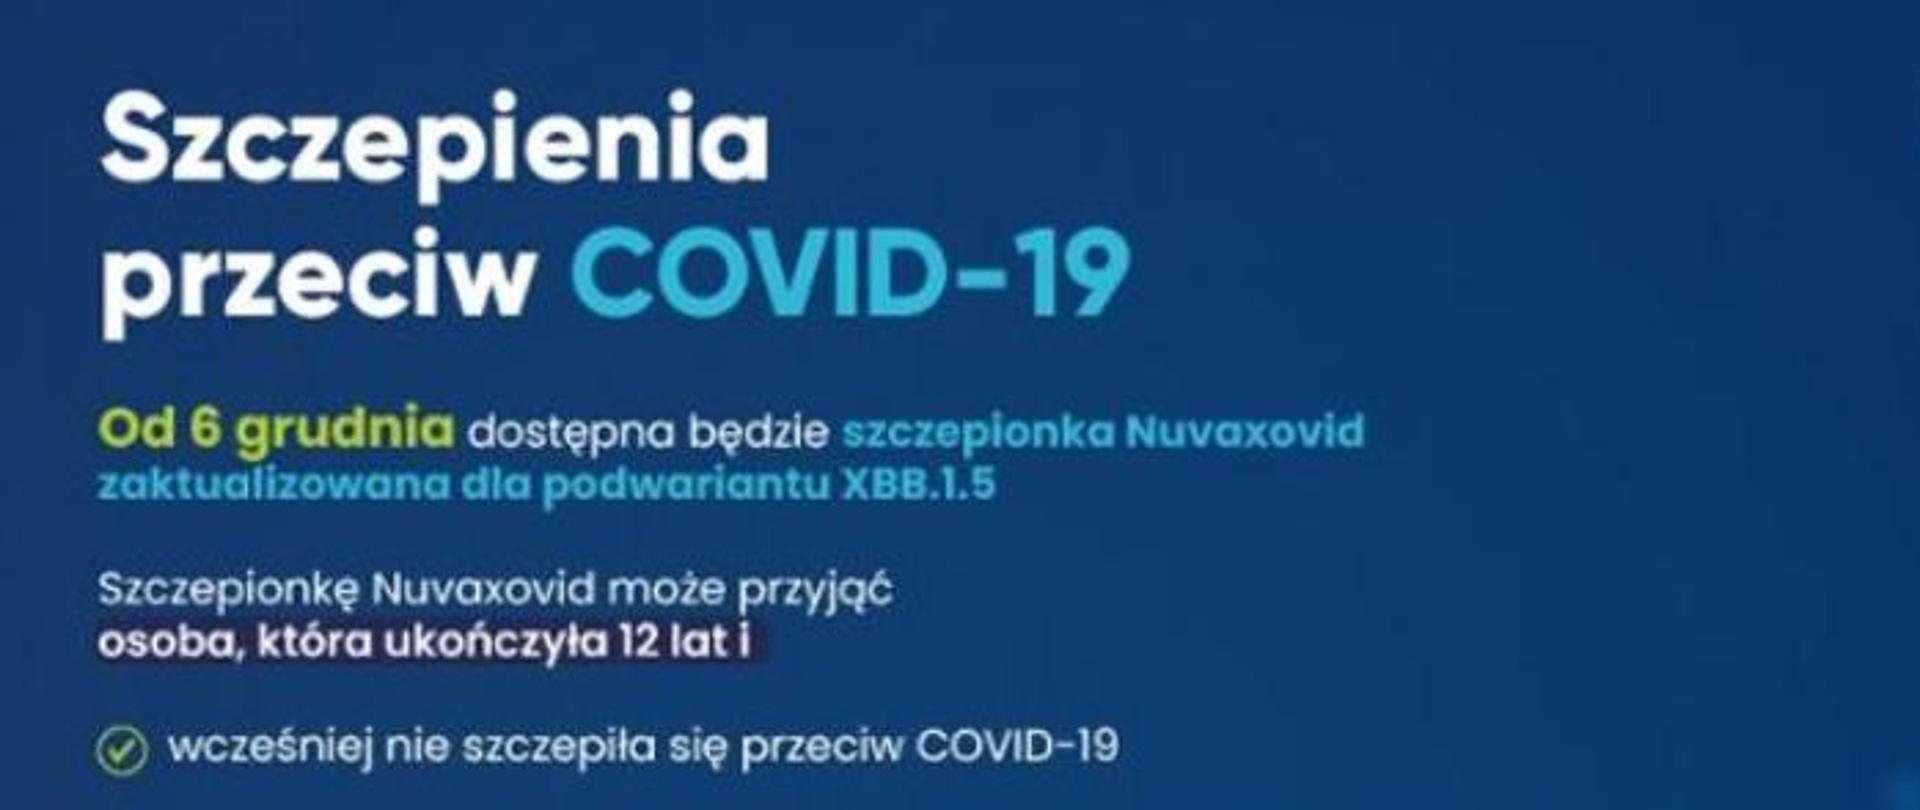 Na niebieskim tle napis Szczepienia przeciw Covid -19. Od 6 grudnia dostępna będzie szczepionka Nuvaxovid zaktualizowana dla podwariantu XBB.1.5. Szczepionkę Nuvaxovid może przyjąć osoba, która ukończyła 12 lat i wsześniej nież szczepiła się przeciw COVID-19